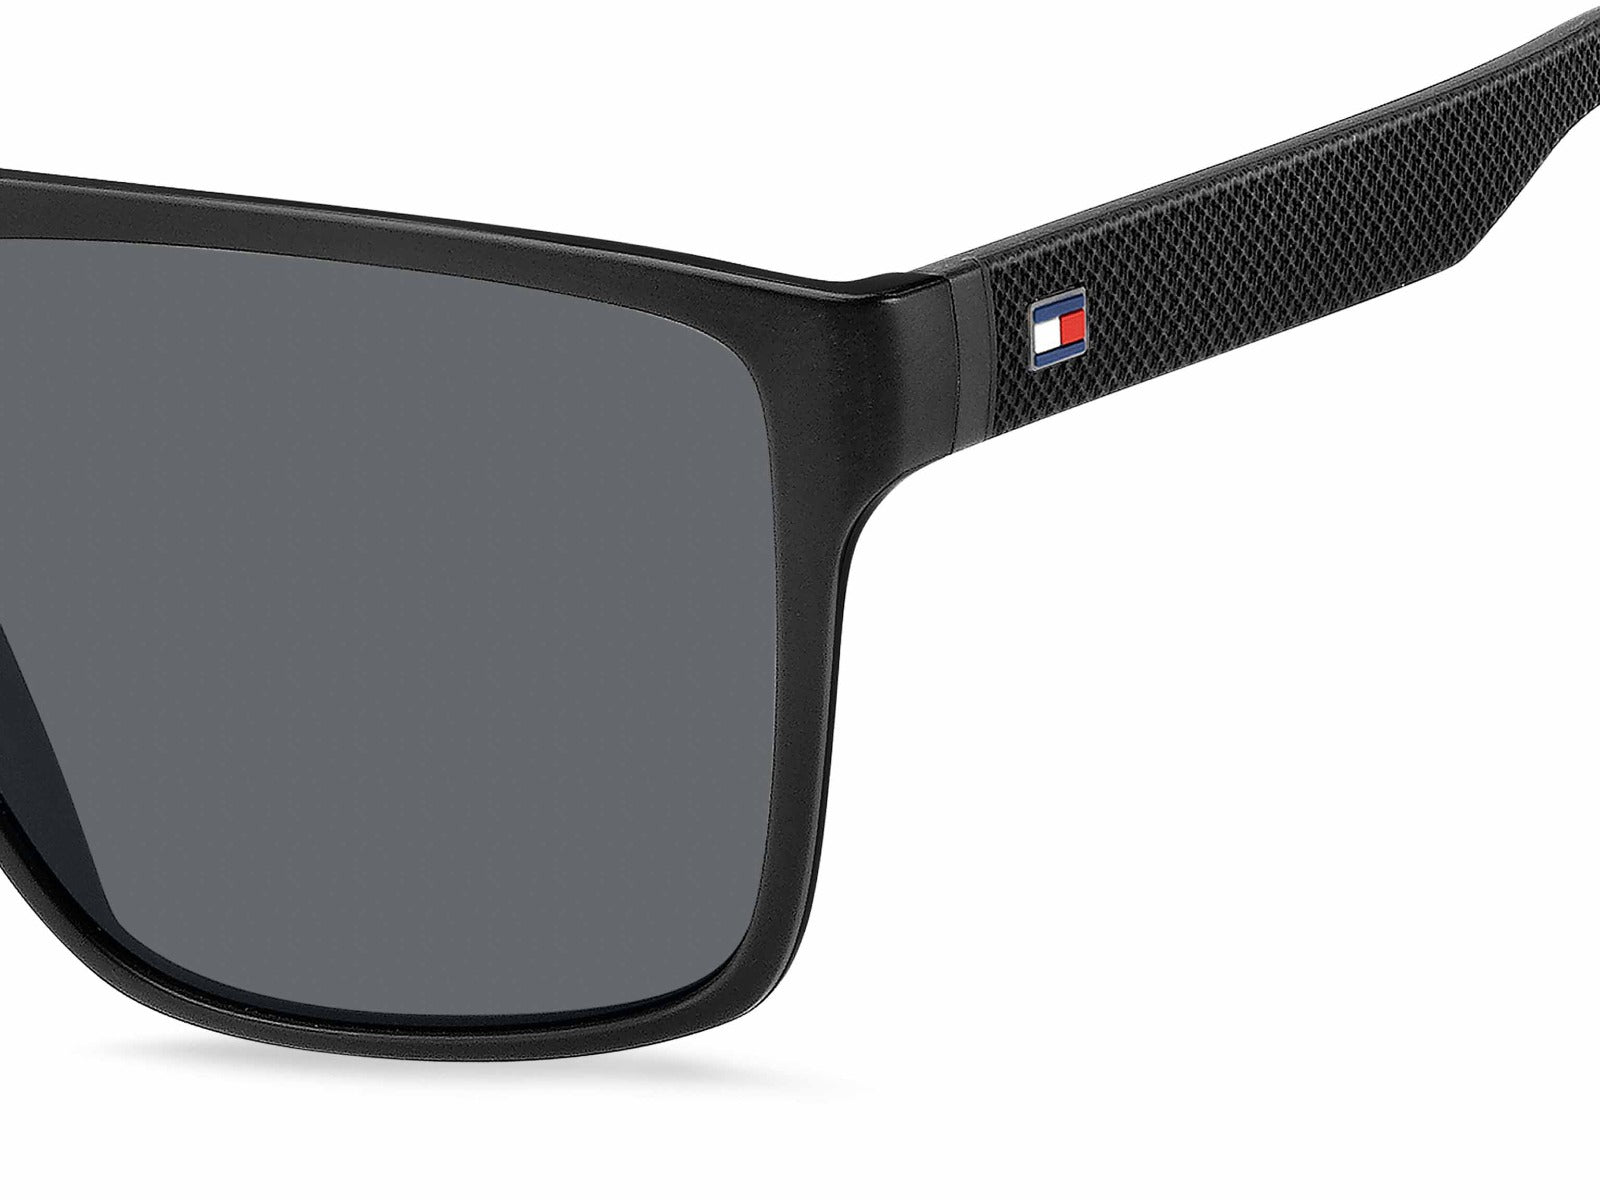 Tommy Hilfiger TH1717/S Sunglasses | Fashion Eyewear UK